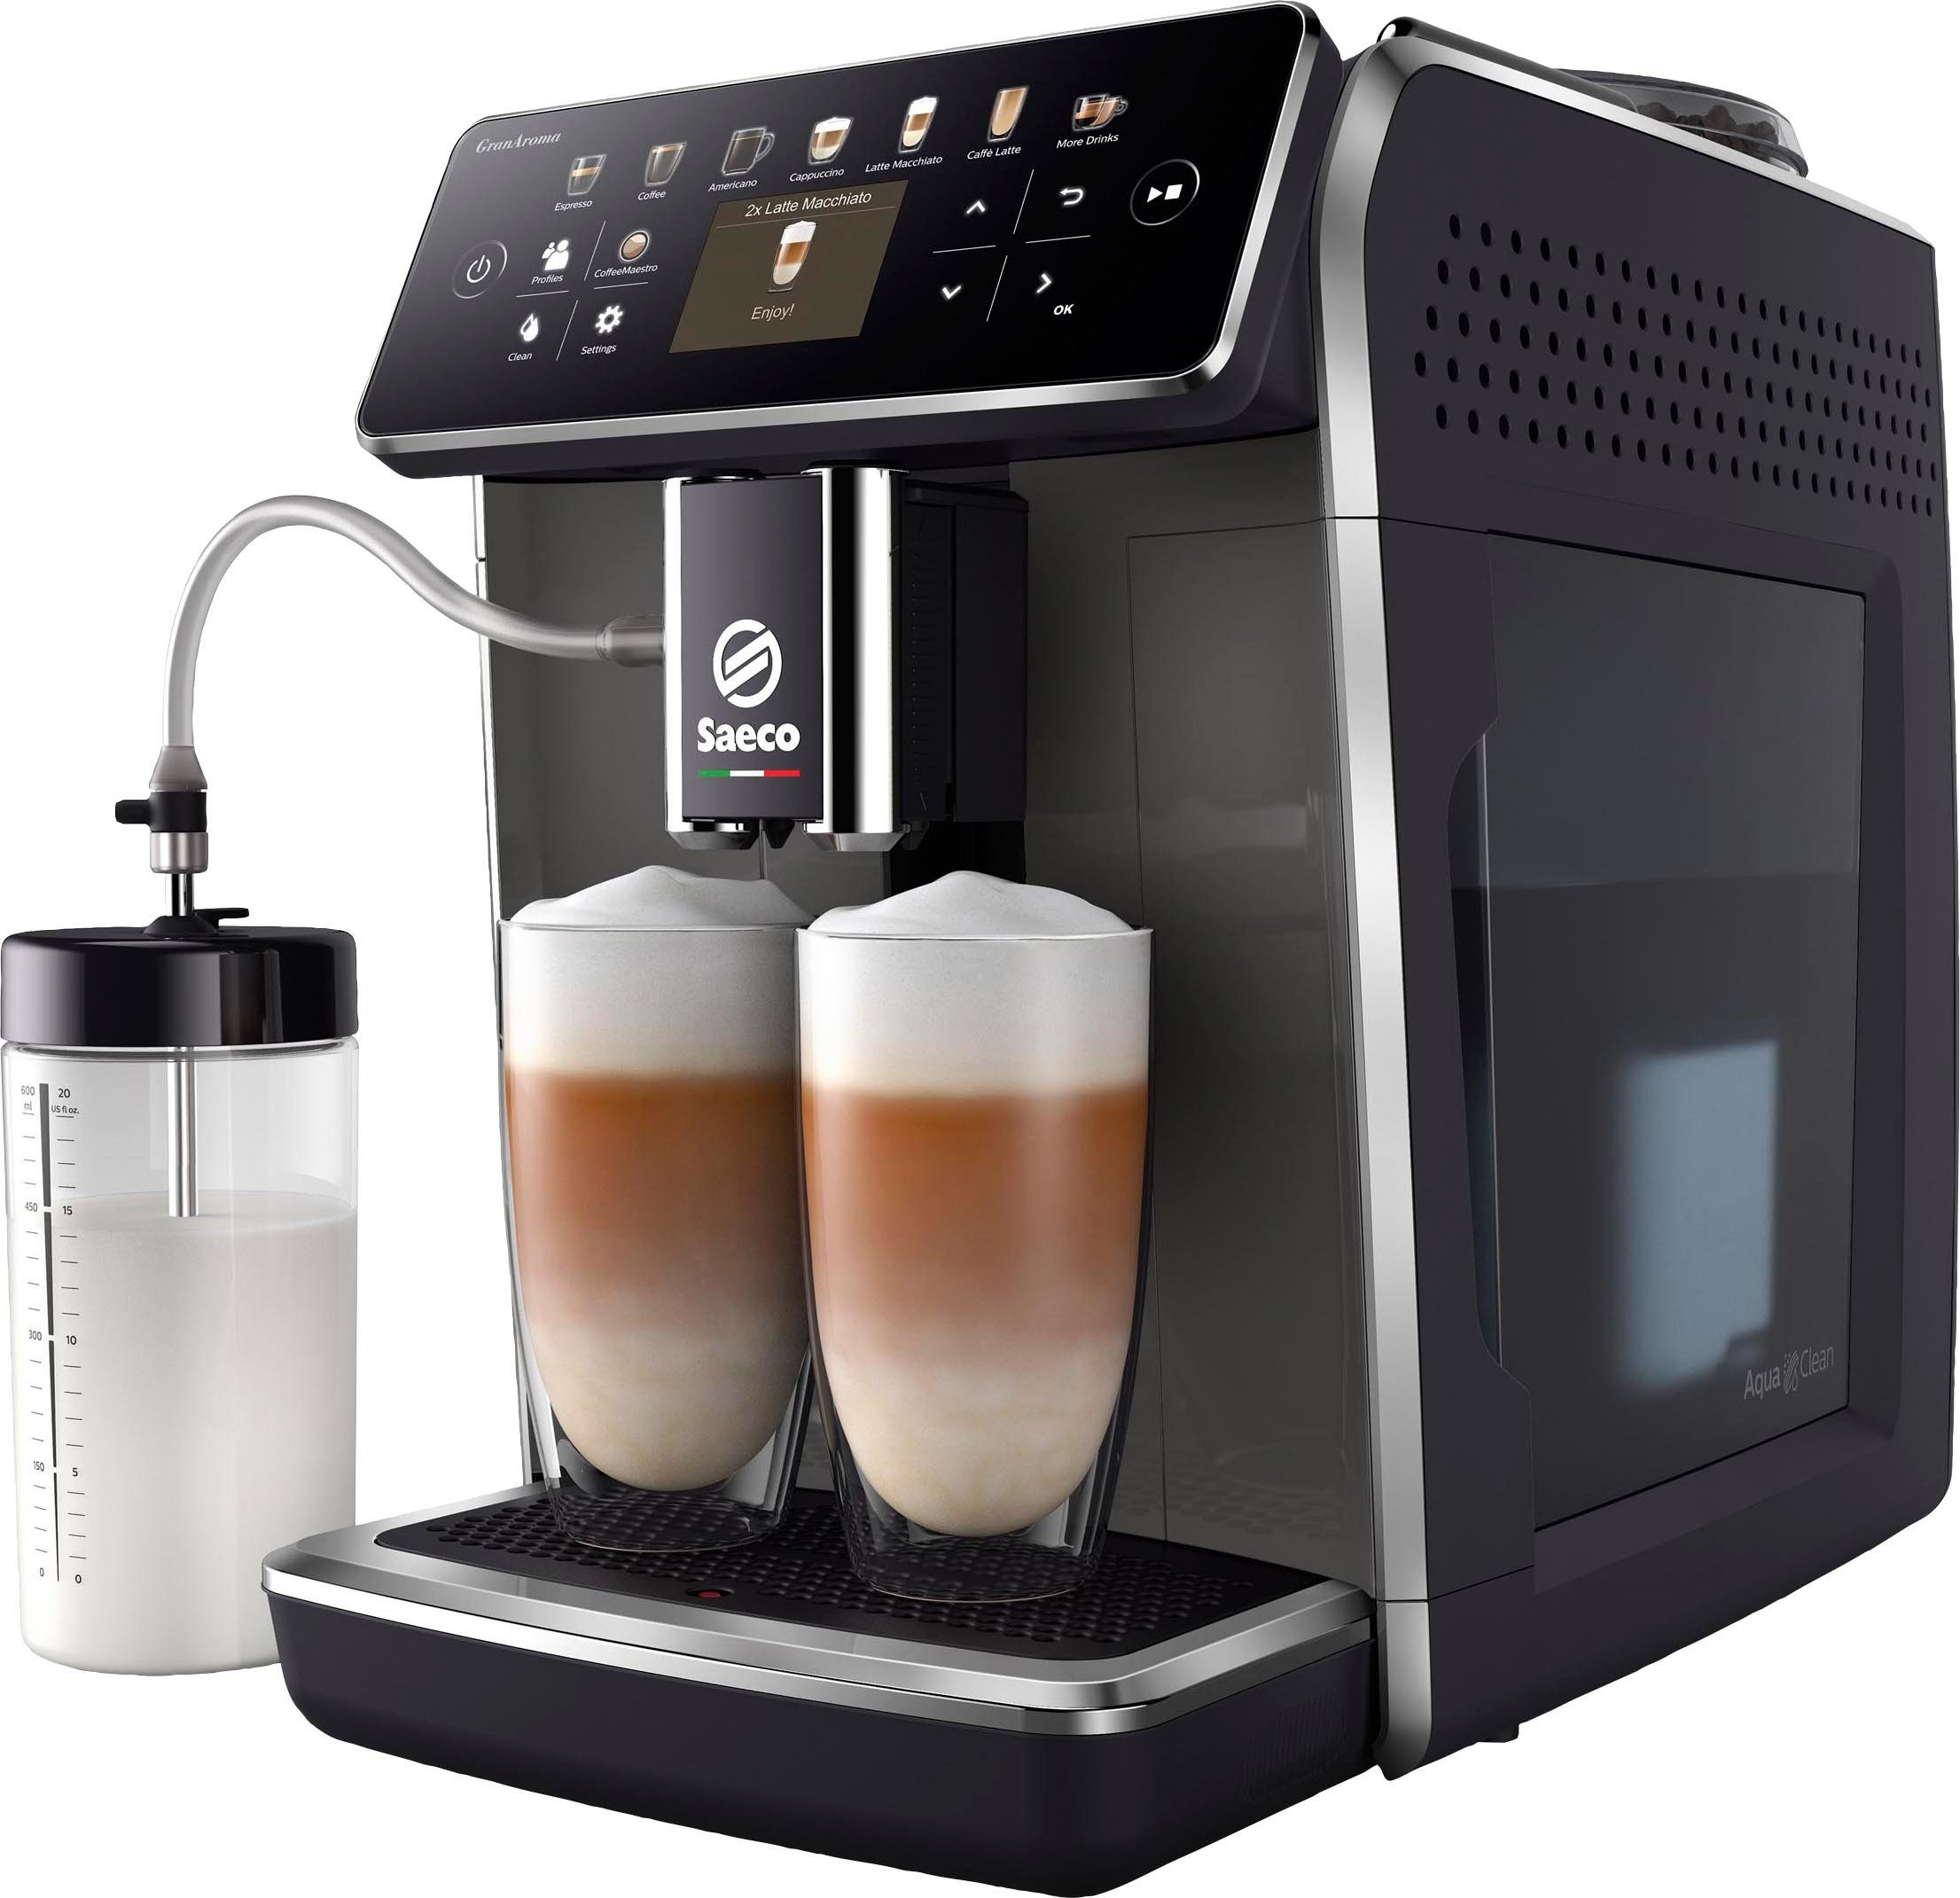 für GranAroma Kaffeespezialitäten, 14 SM6580/50, Kaffeevollautomat 4 TFT Display Saeco Benutzerprofilen mit und